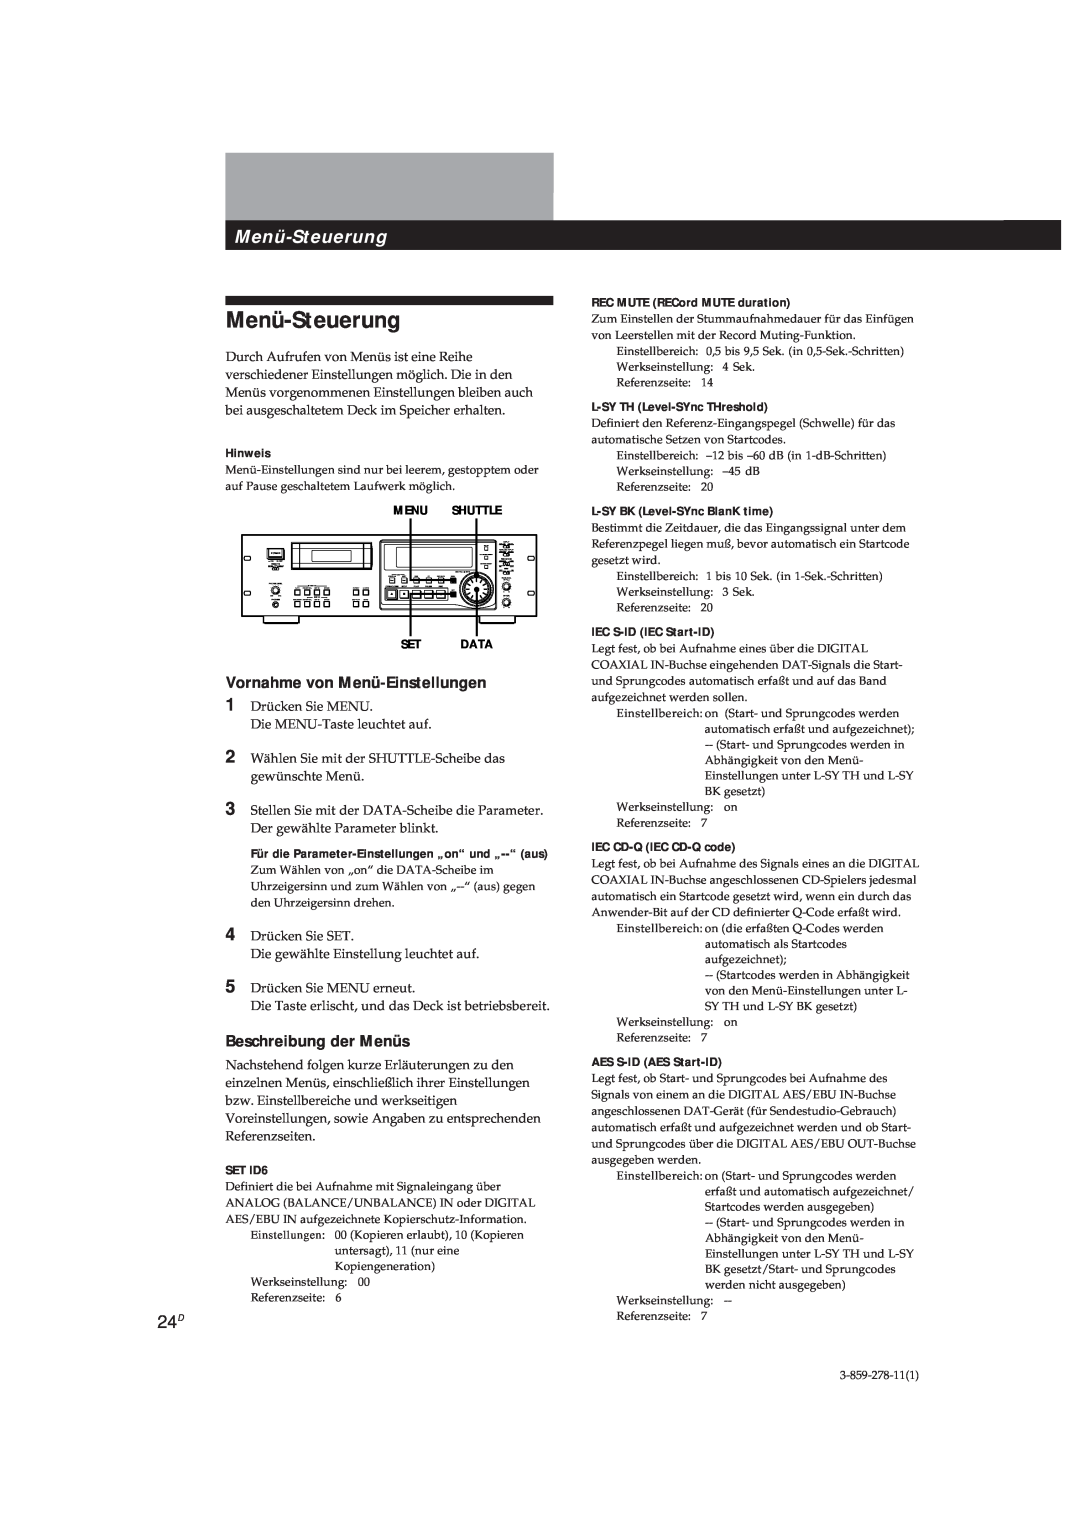 Sony PCM-R500 manual Menü-Steuerung, Vornahme von Menü-Einstellungen, Beschreibung der Menüs, REC MUTE RECord MUTE duration 